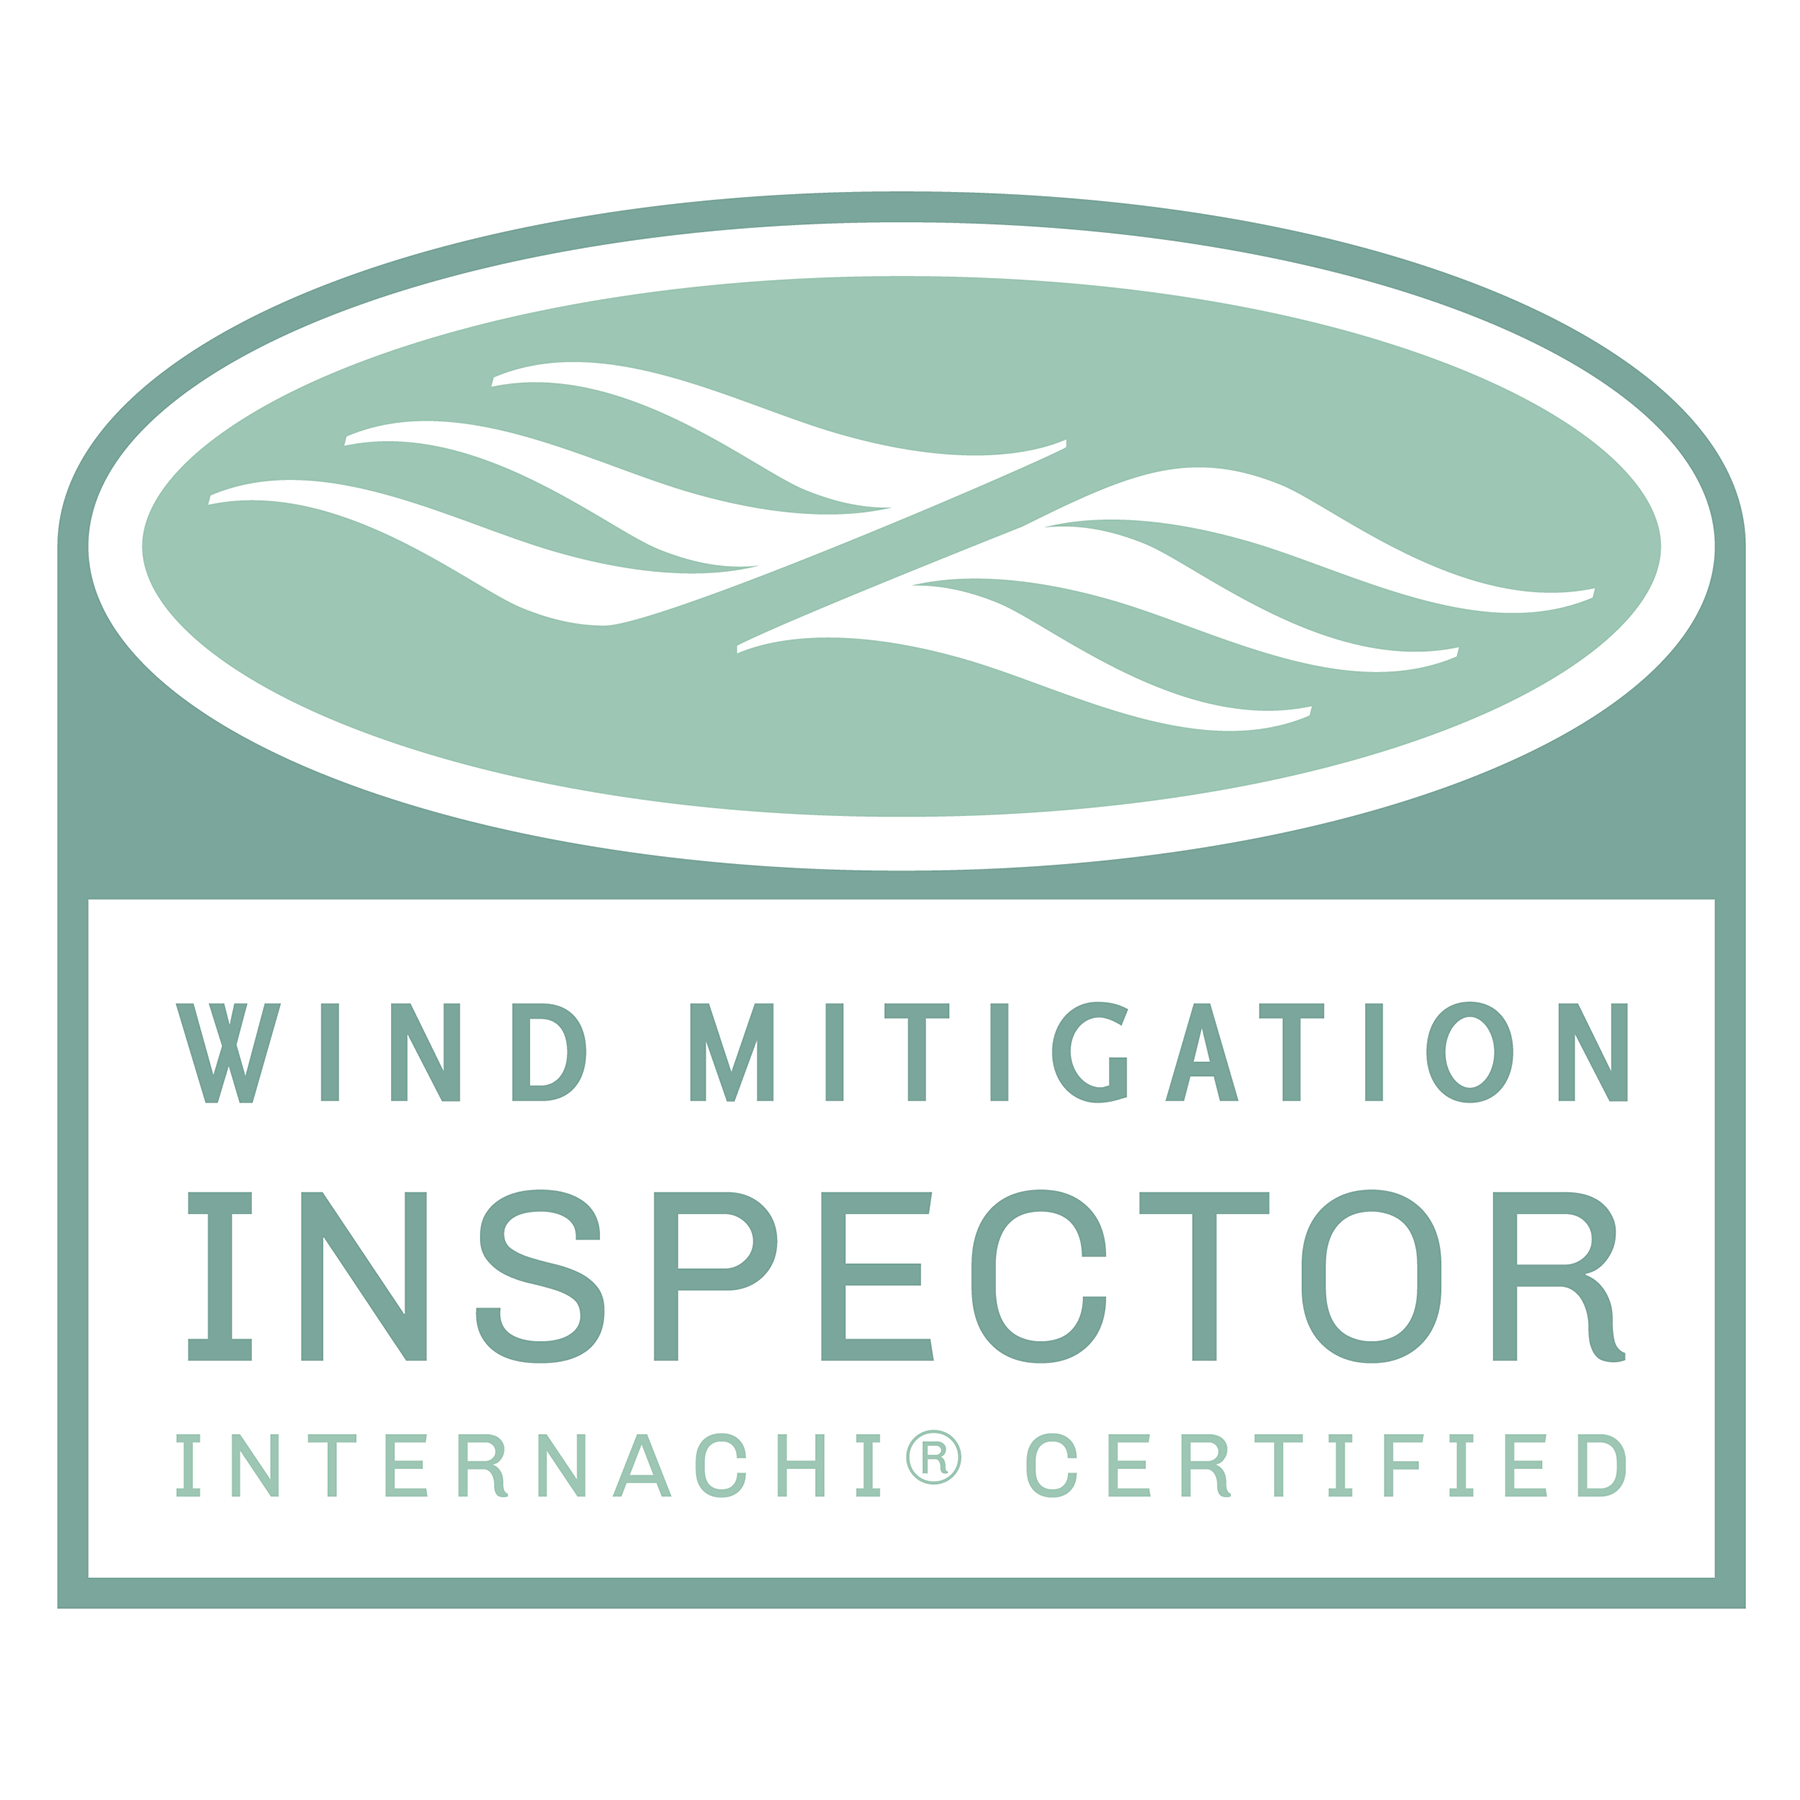 Wind Mitigation Inspector InterNACHI Certified